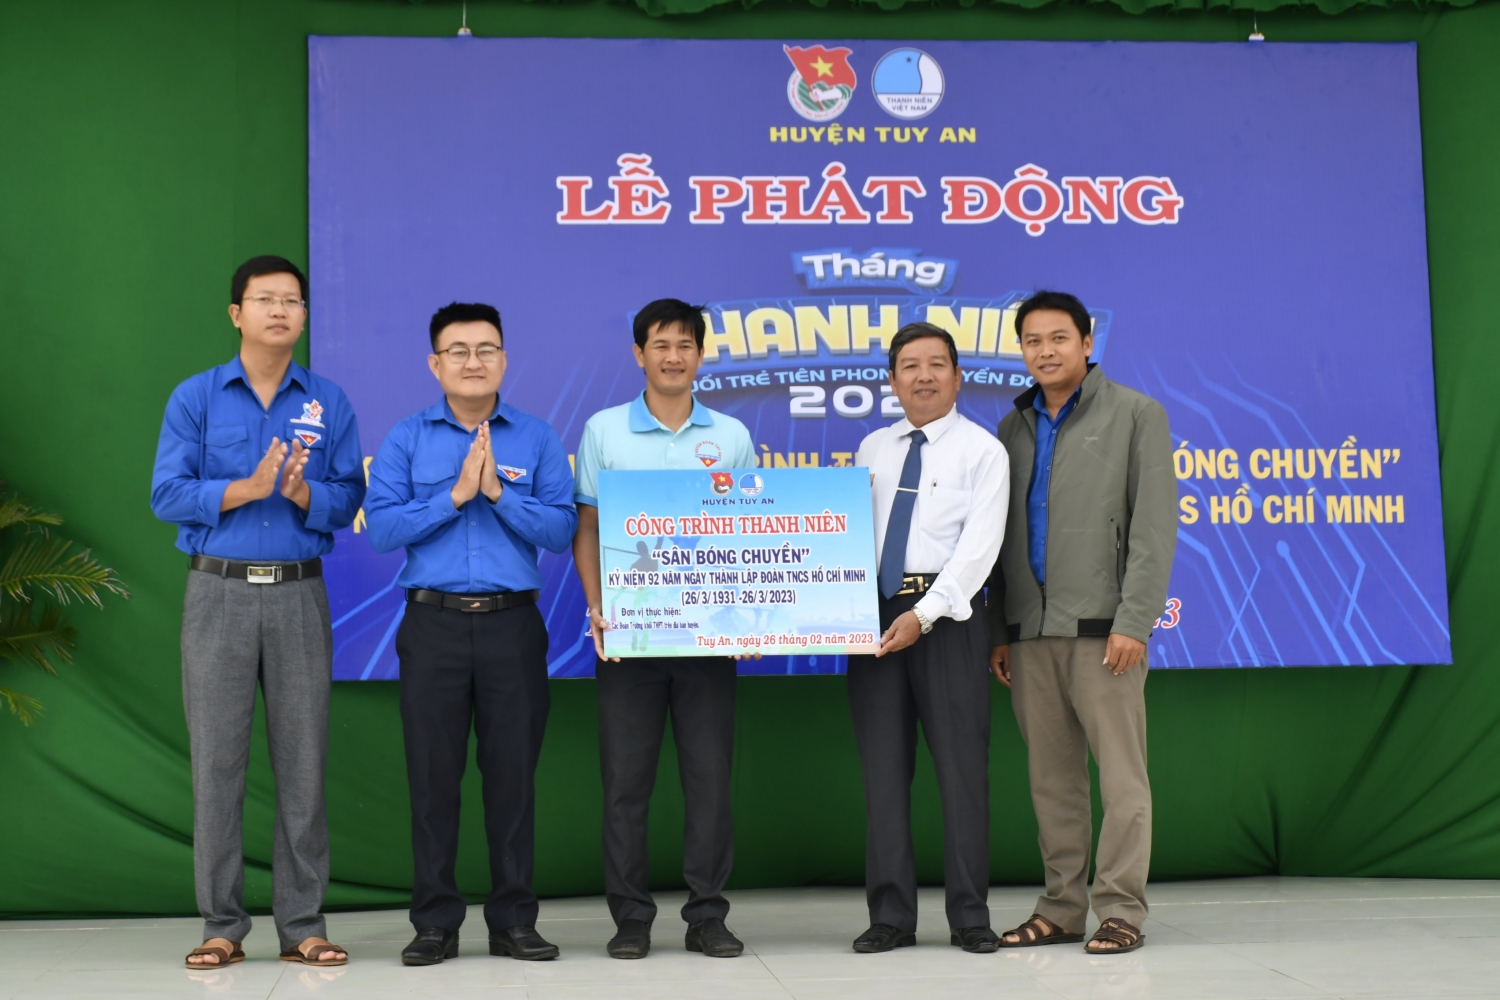 Bàn giao công trình thanh niên “Sân bóng chuyền” cho Trường THPT Trần Phú.